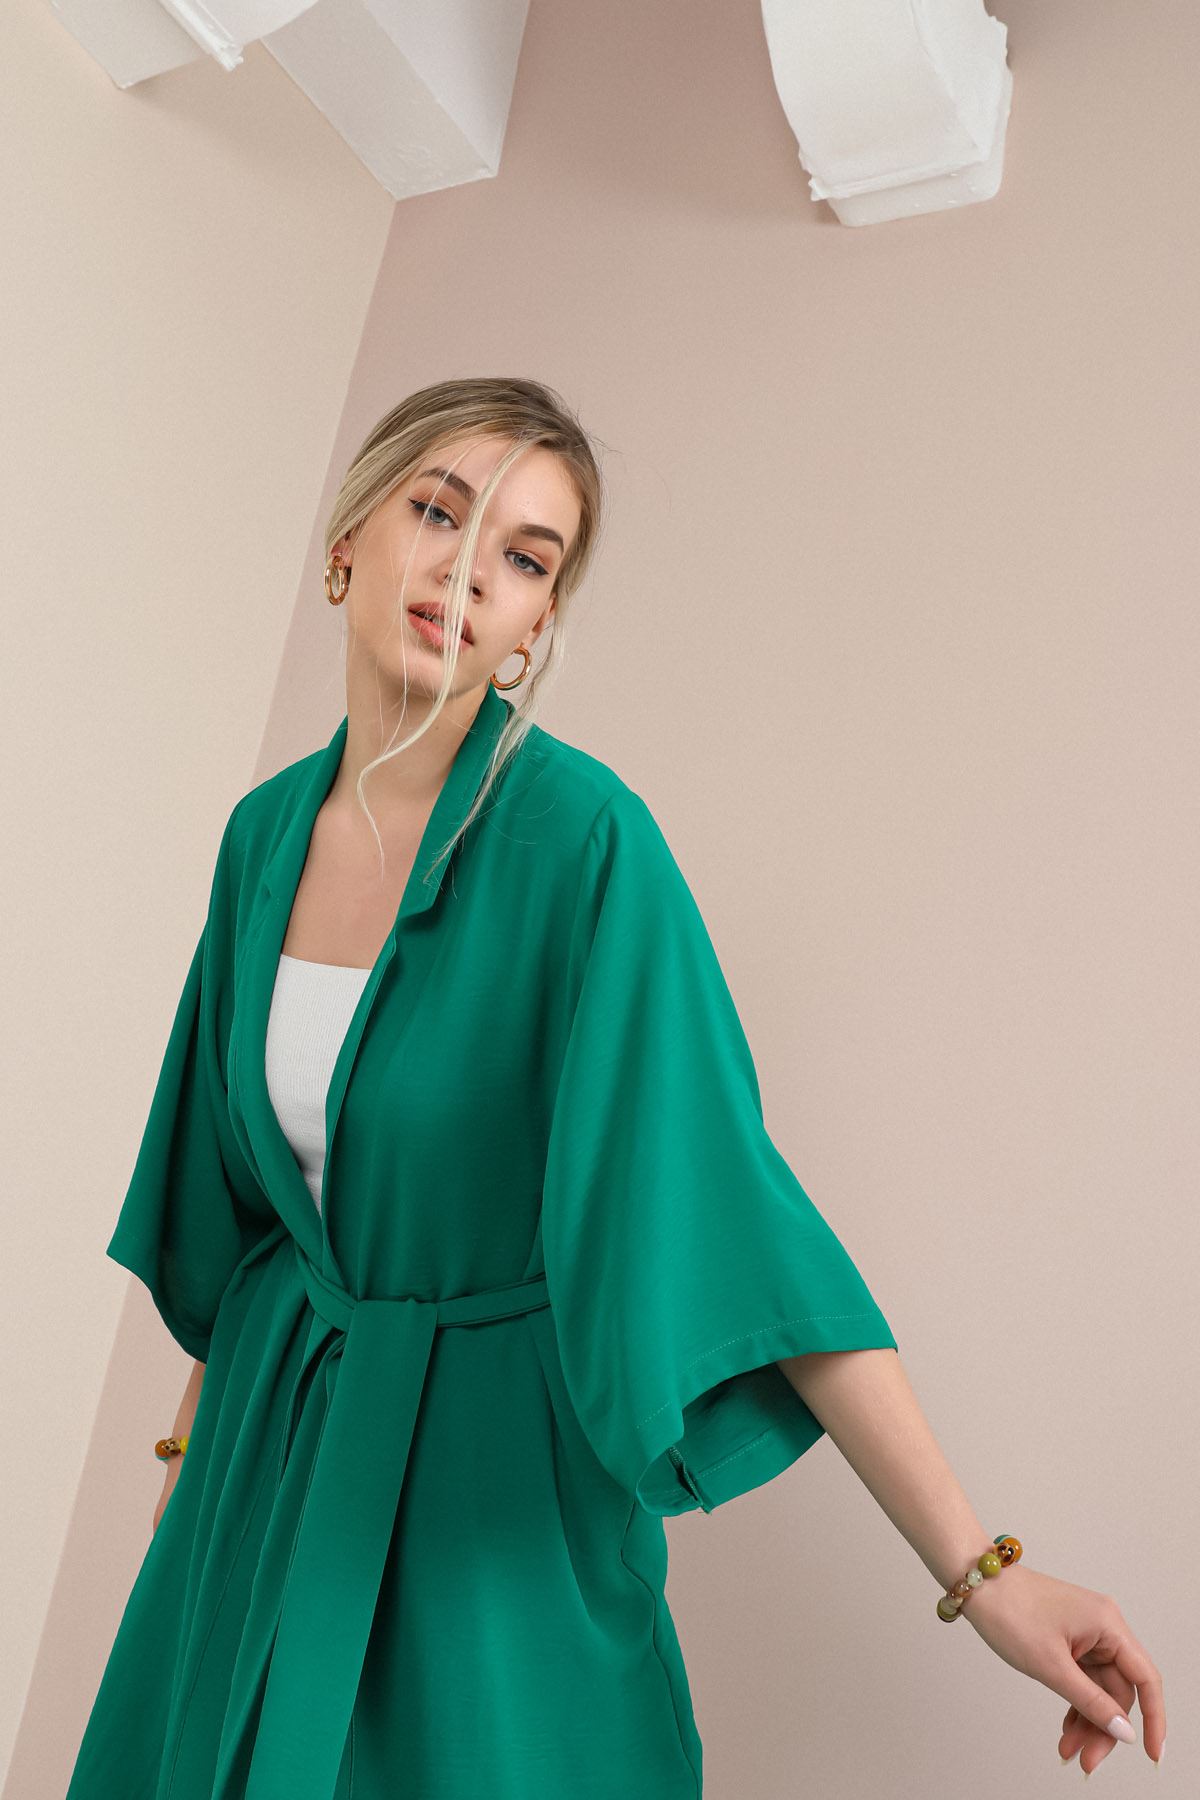 Linen Fabric Long Sleeve Revere Collar Hip Height Comfy Women Jacket-Emerald Green